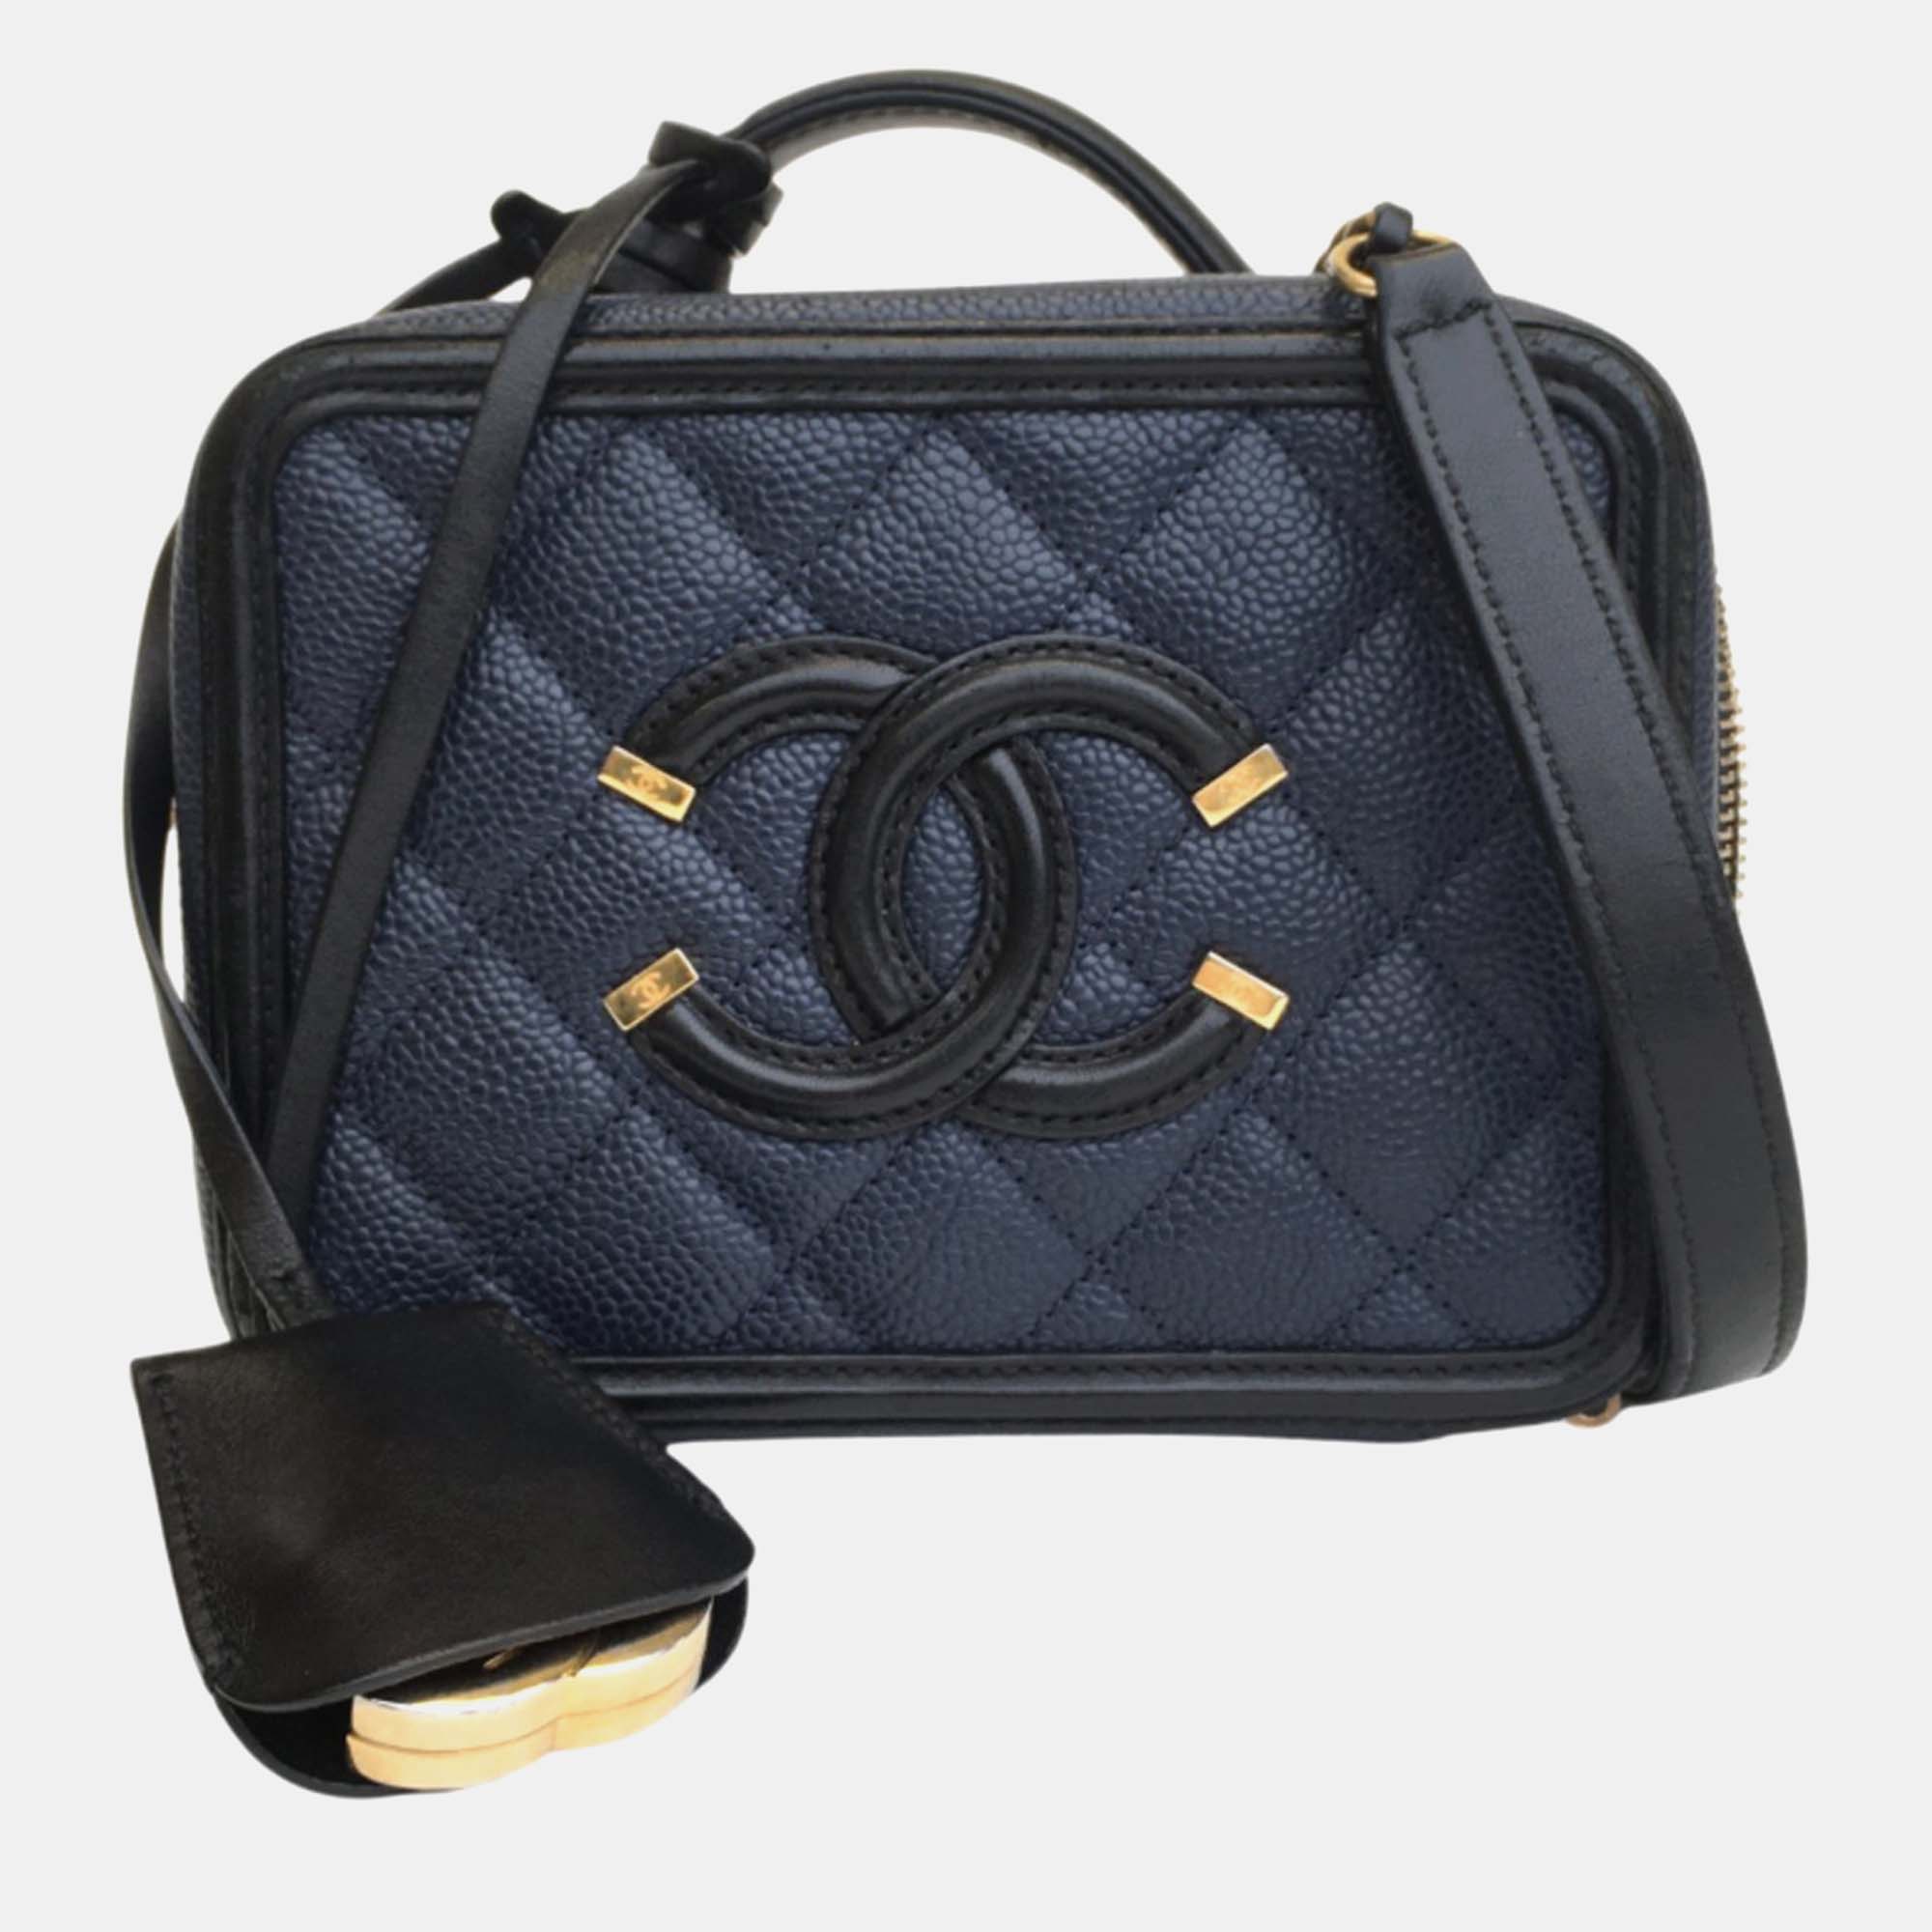 Chanel blue/black leather mini filigree shoulder bag